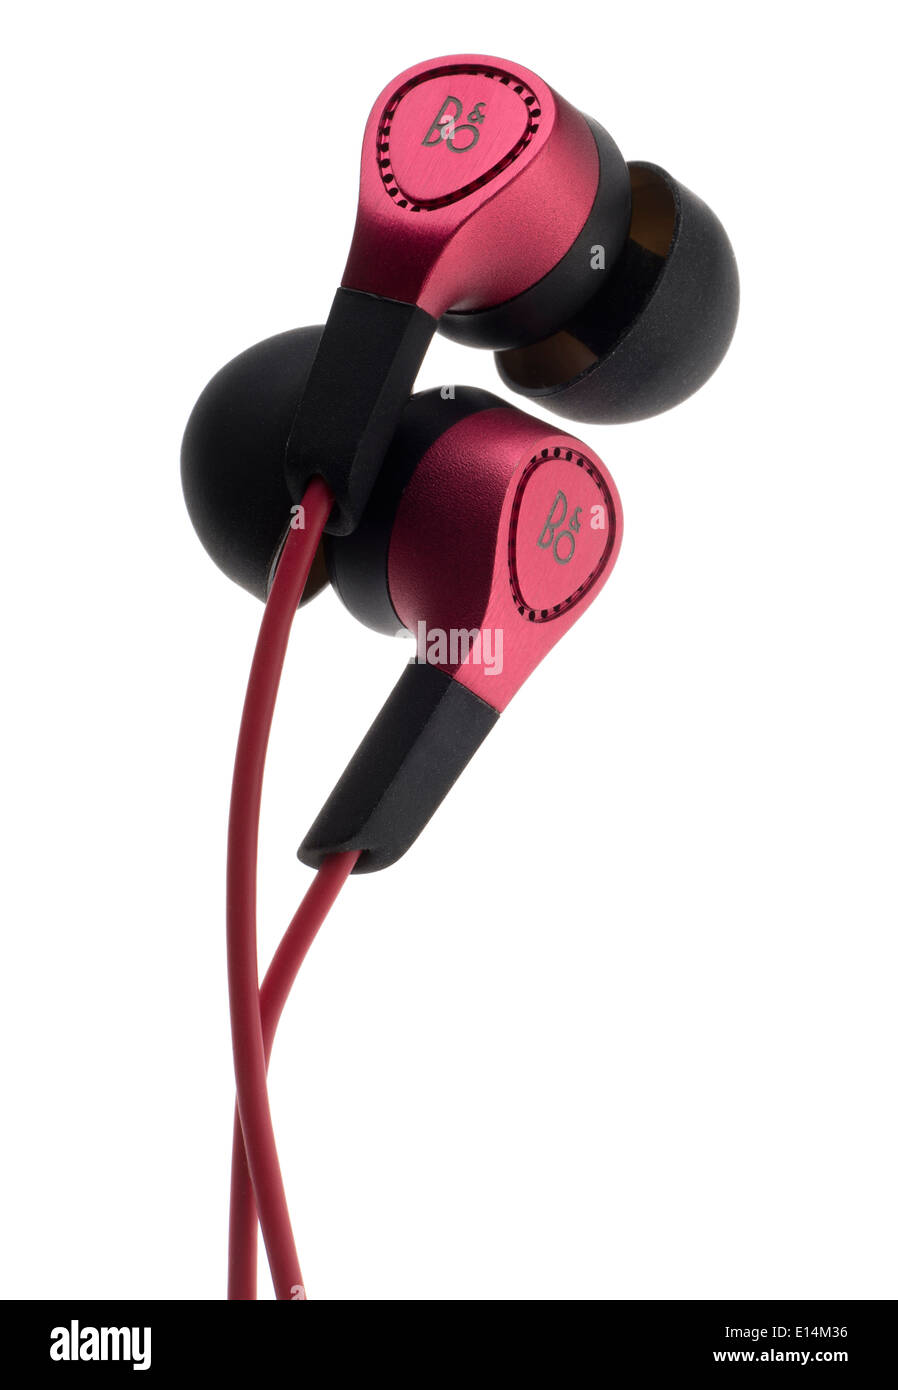 B & O play earphones Stock Photo